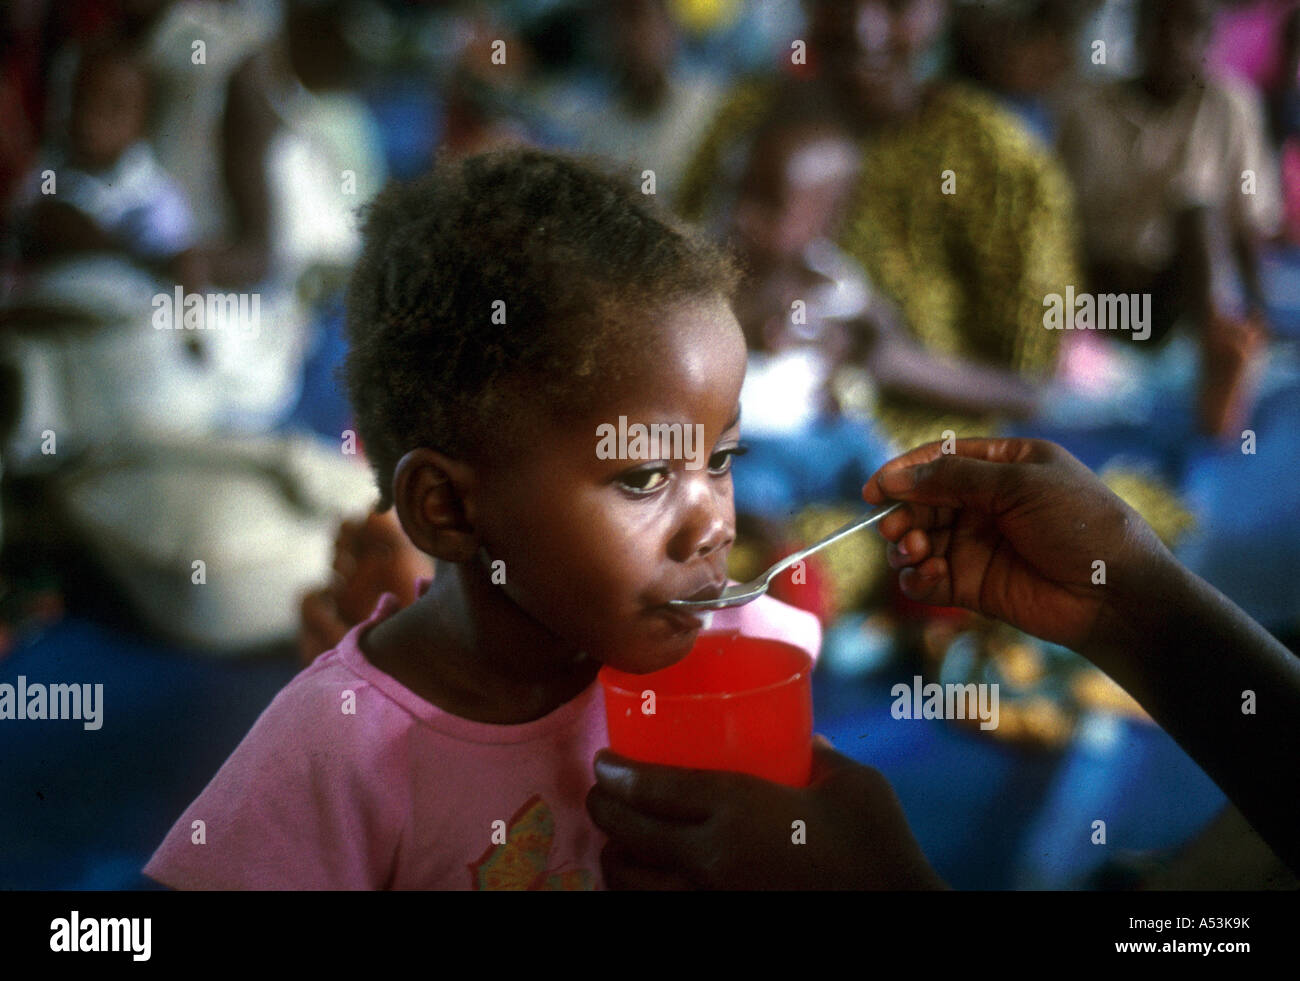 Painet ha1516 3054 liberia alimentazione di bambini sfollati camp buchanan paese di missione nazione in via di sviluppo meno economicamente Foto Stock